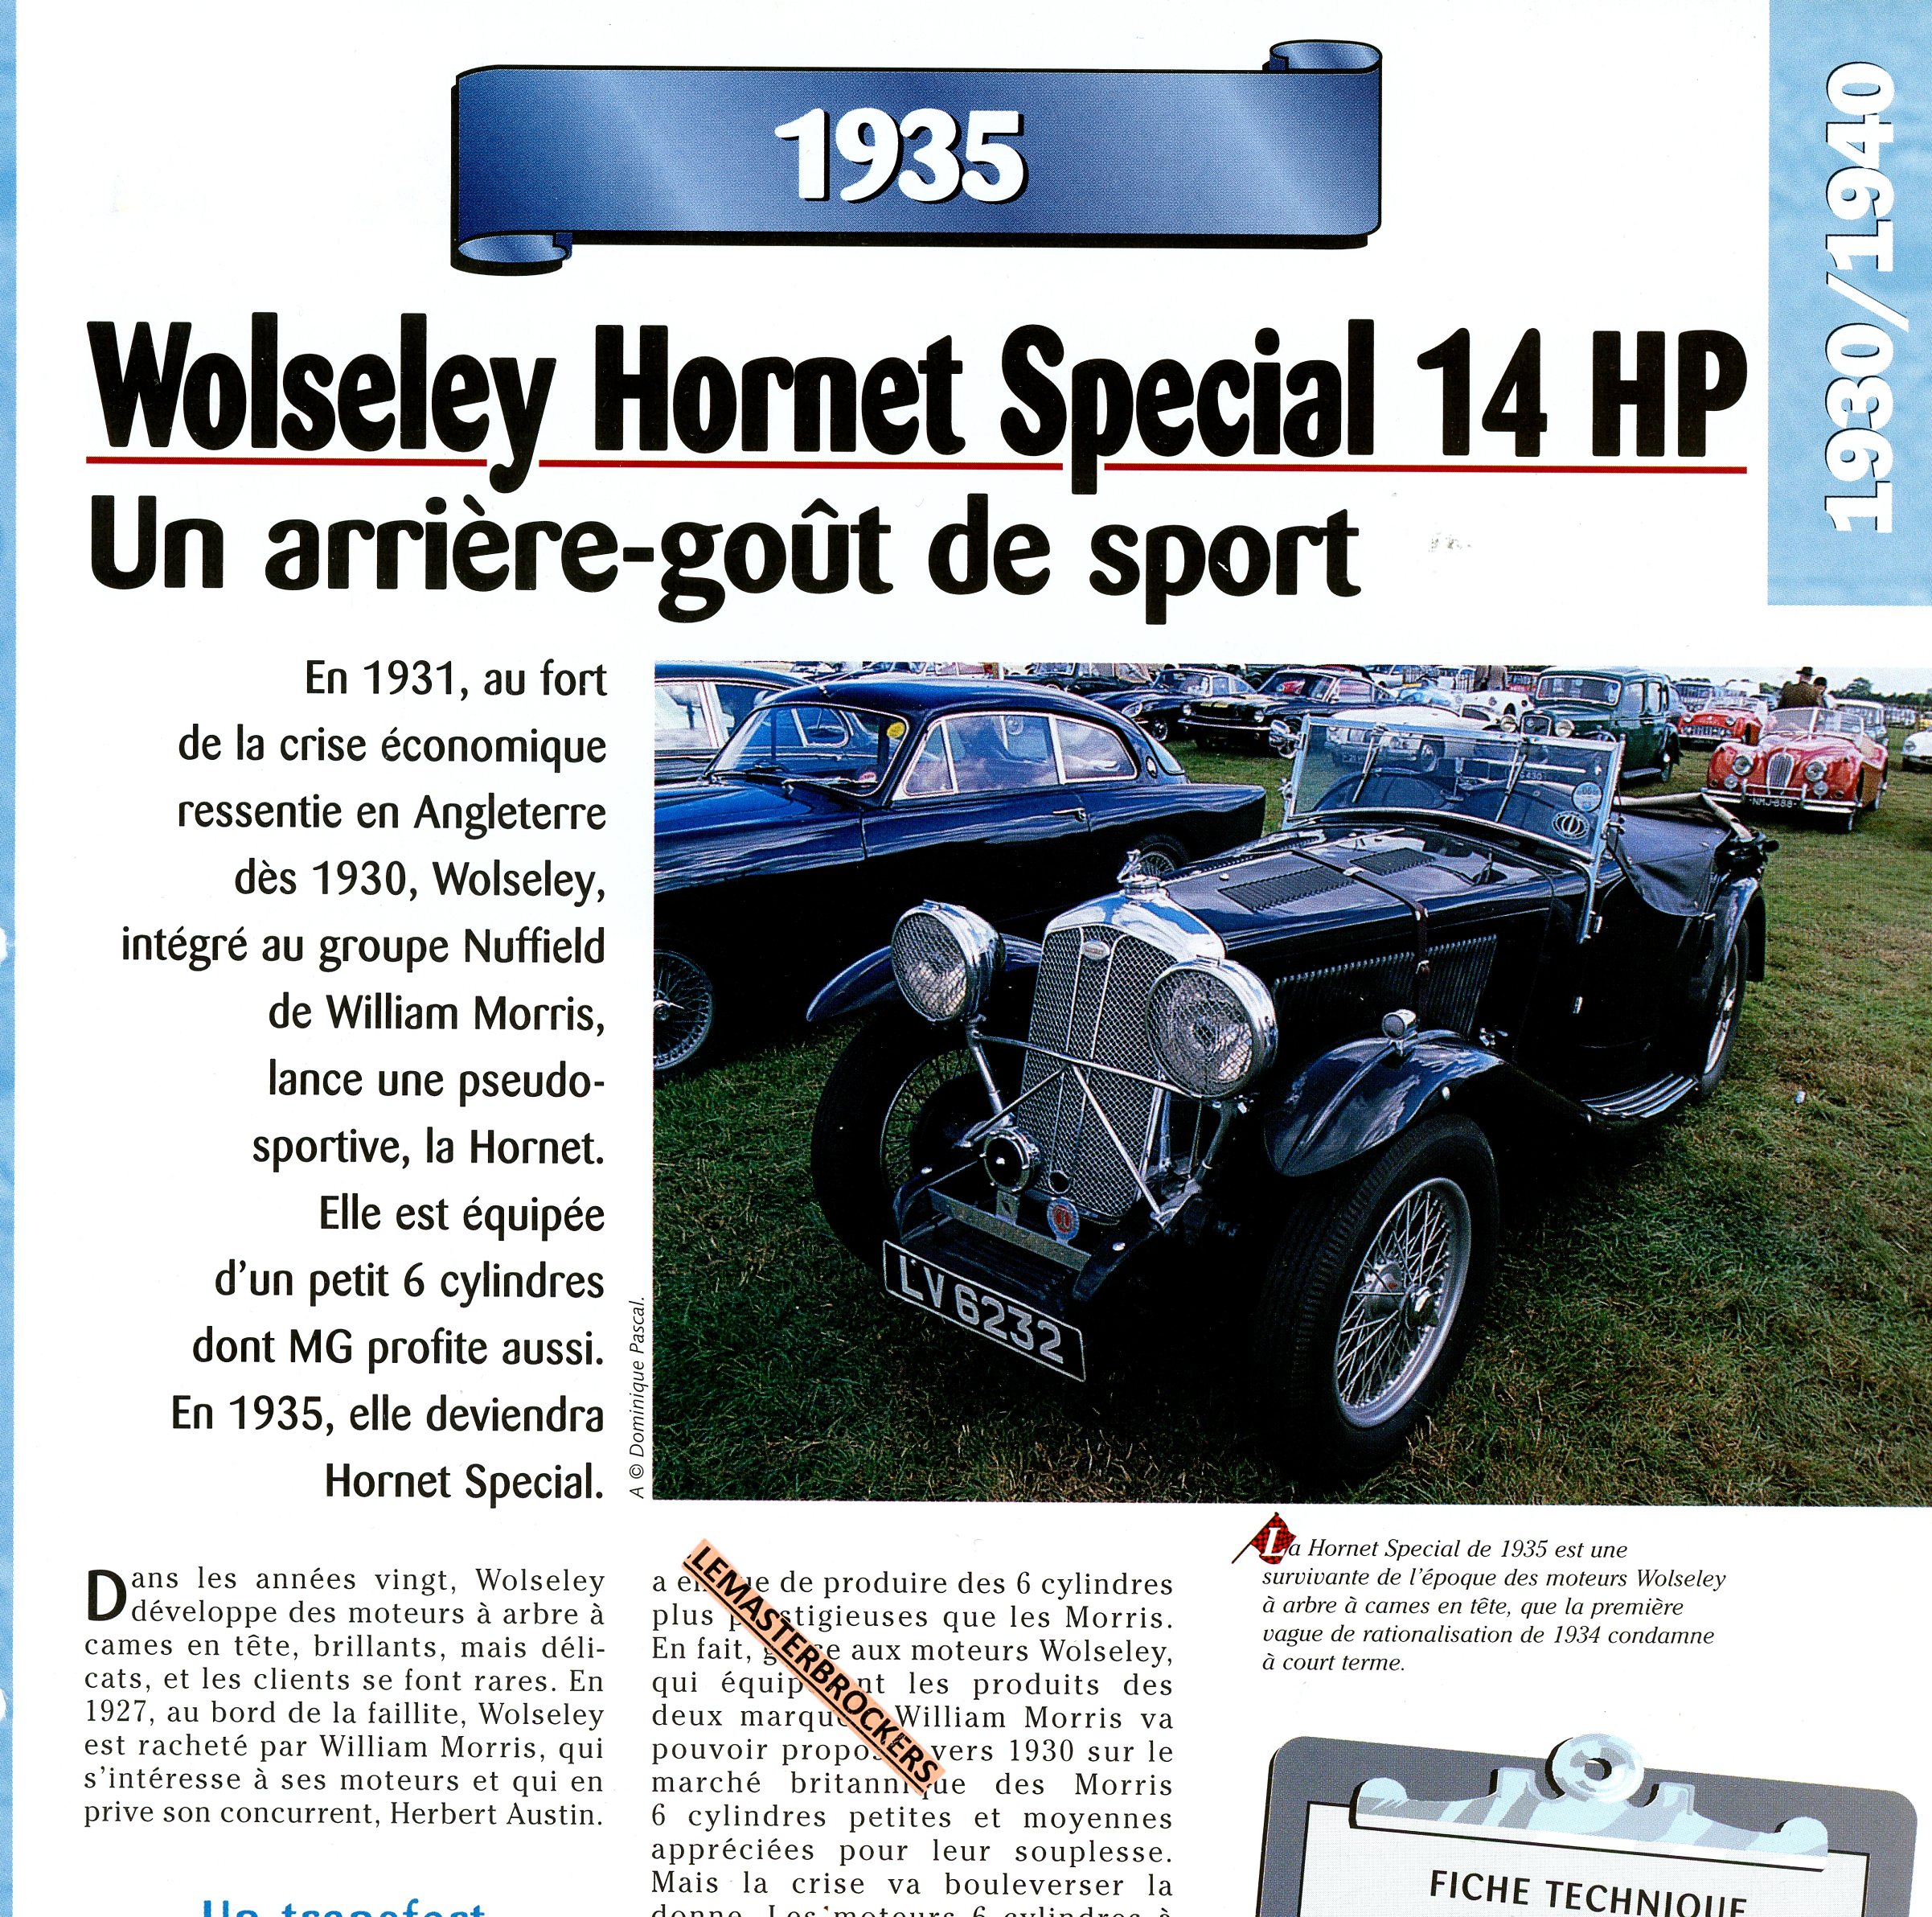 FICHE-TECHNIQUE-WOLSELEY-HORNET-14HP-1935-FICHE-AUTO-LEMASTERBROCKERS